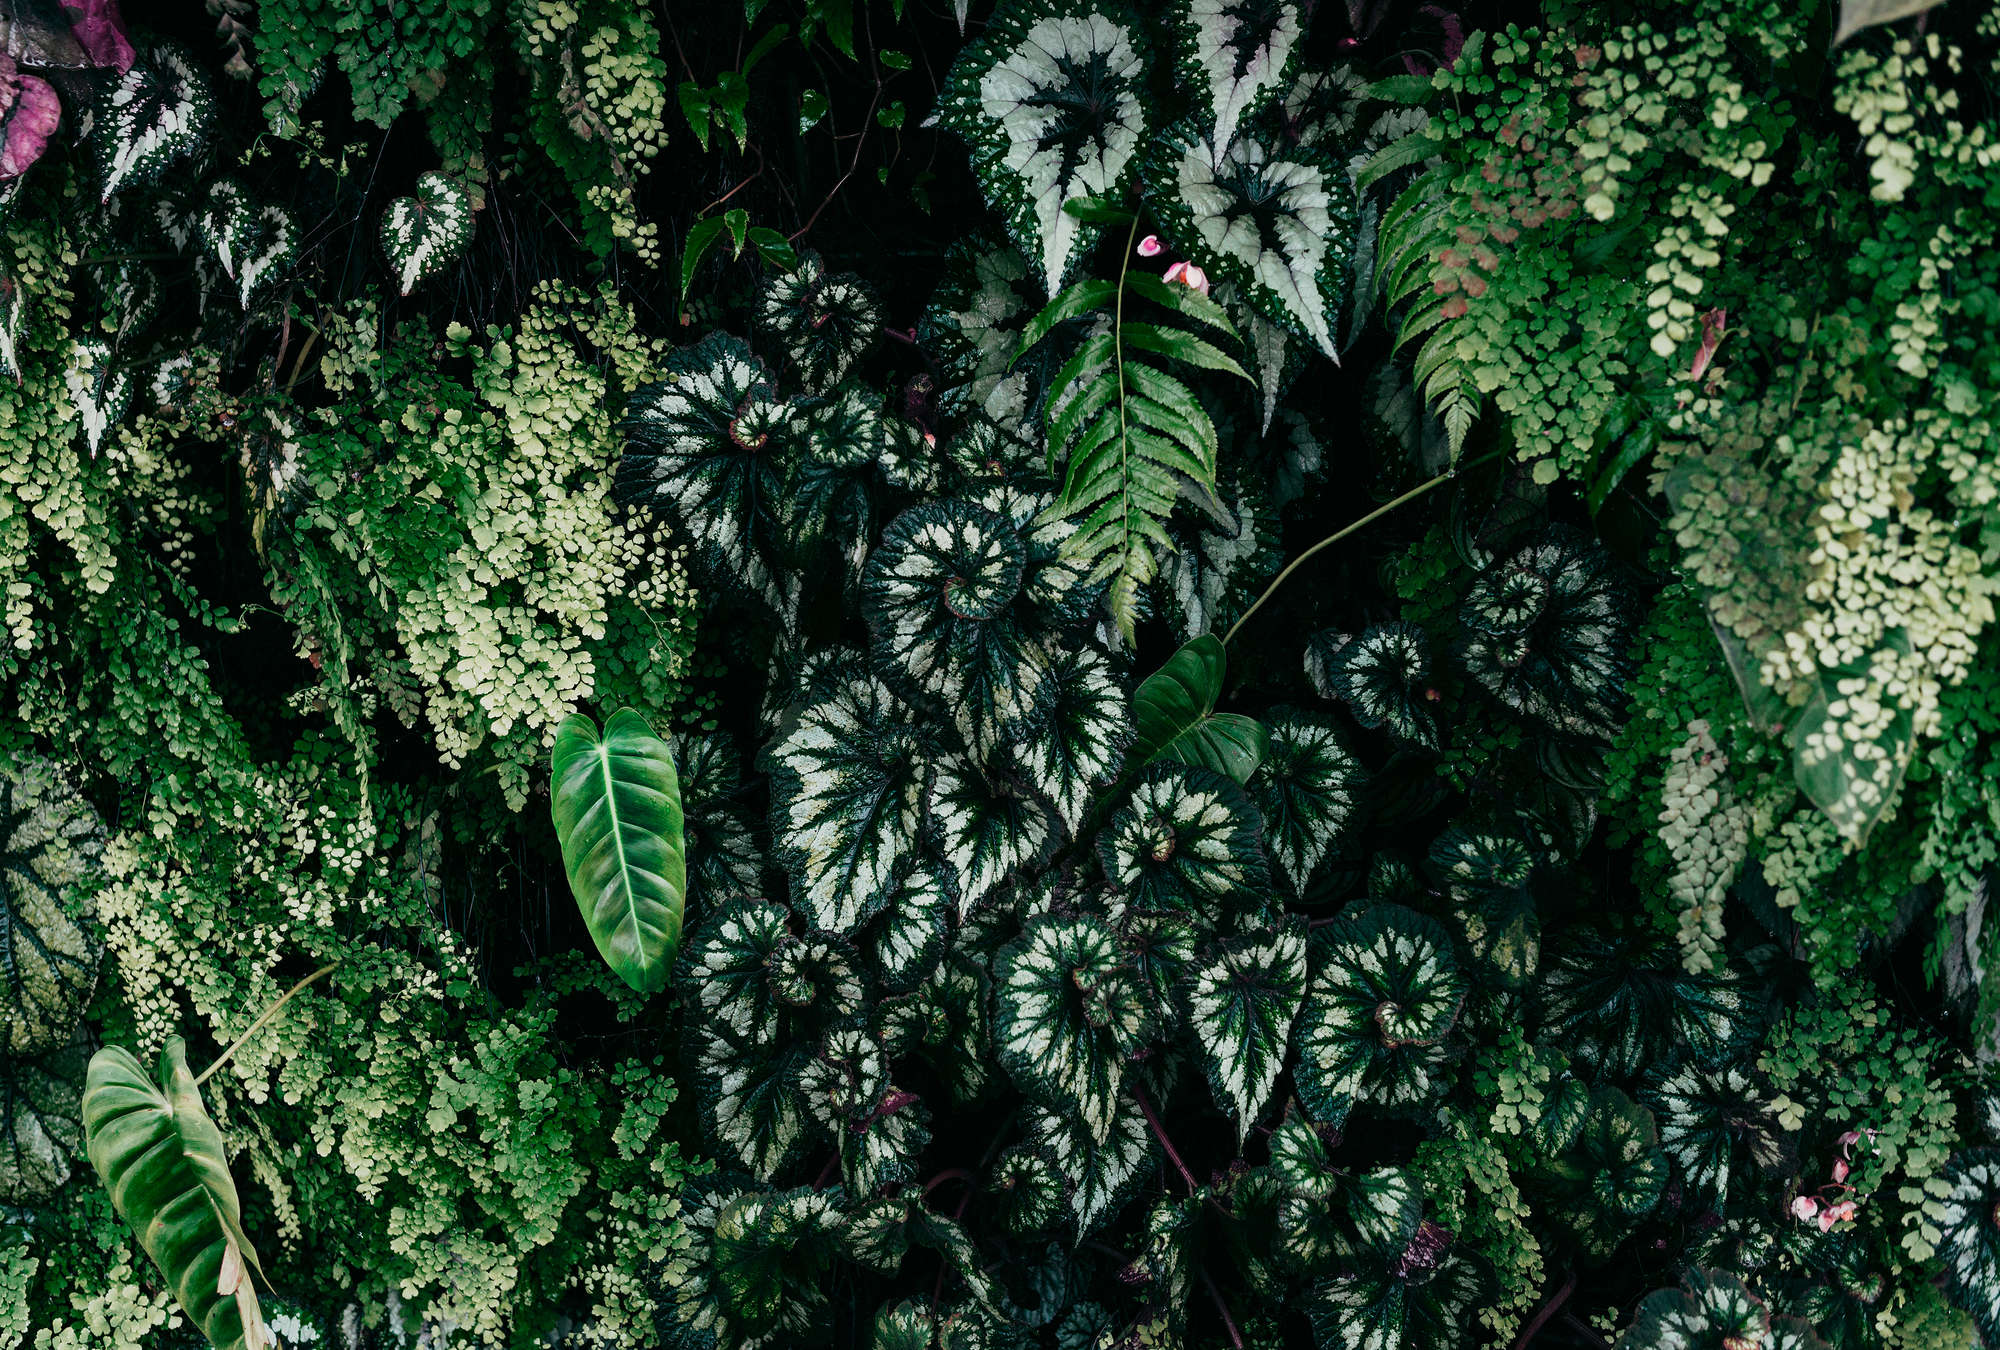             Deep Green 2 - Mural de hojas, helechos y plantas colgantes
        